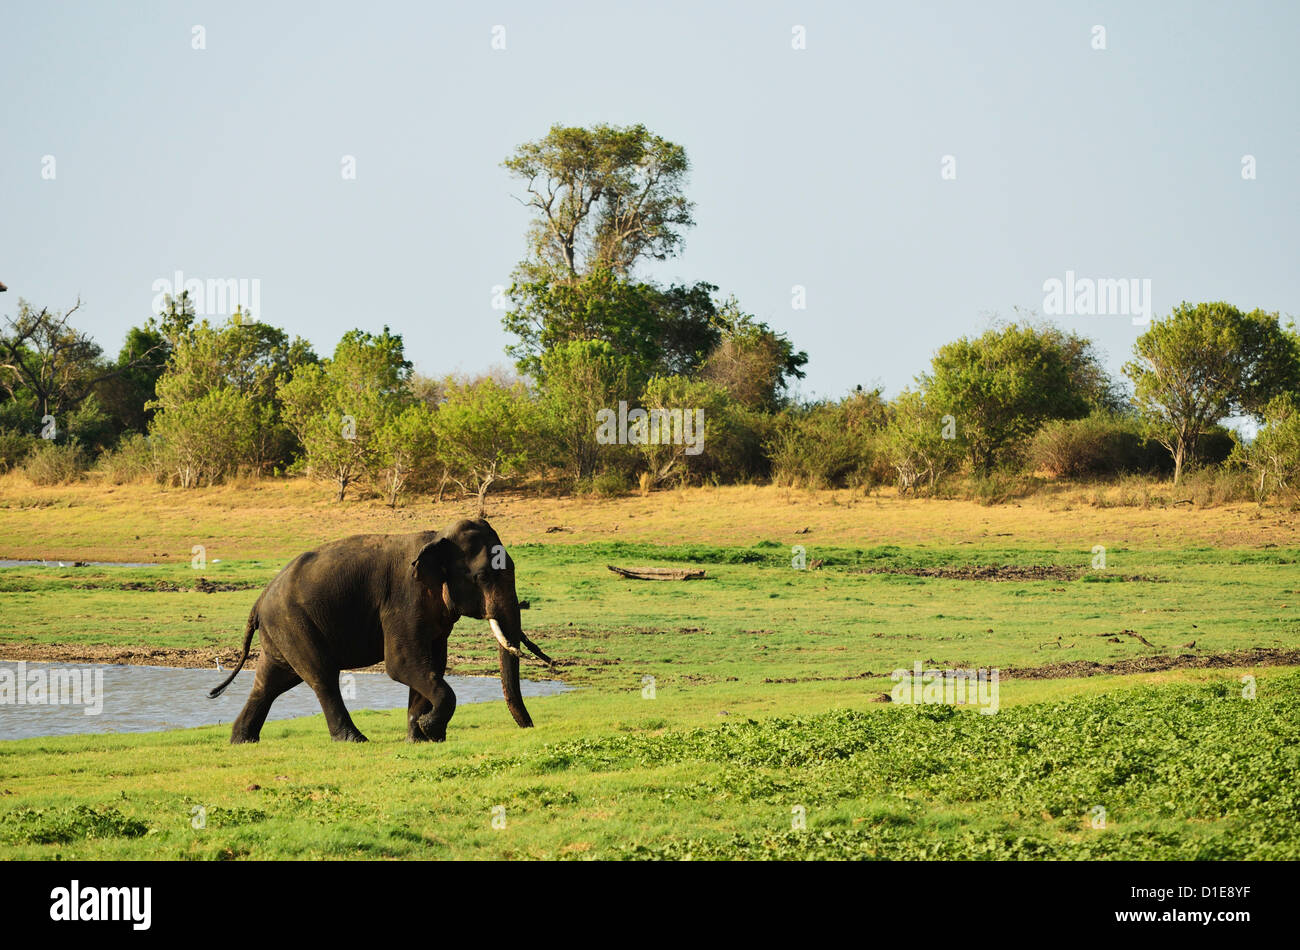 Sri Lankan elephant (Elephas maximus maximus), Minneriya National Park, Sri Lanka, Asia Stock Photo